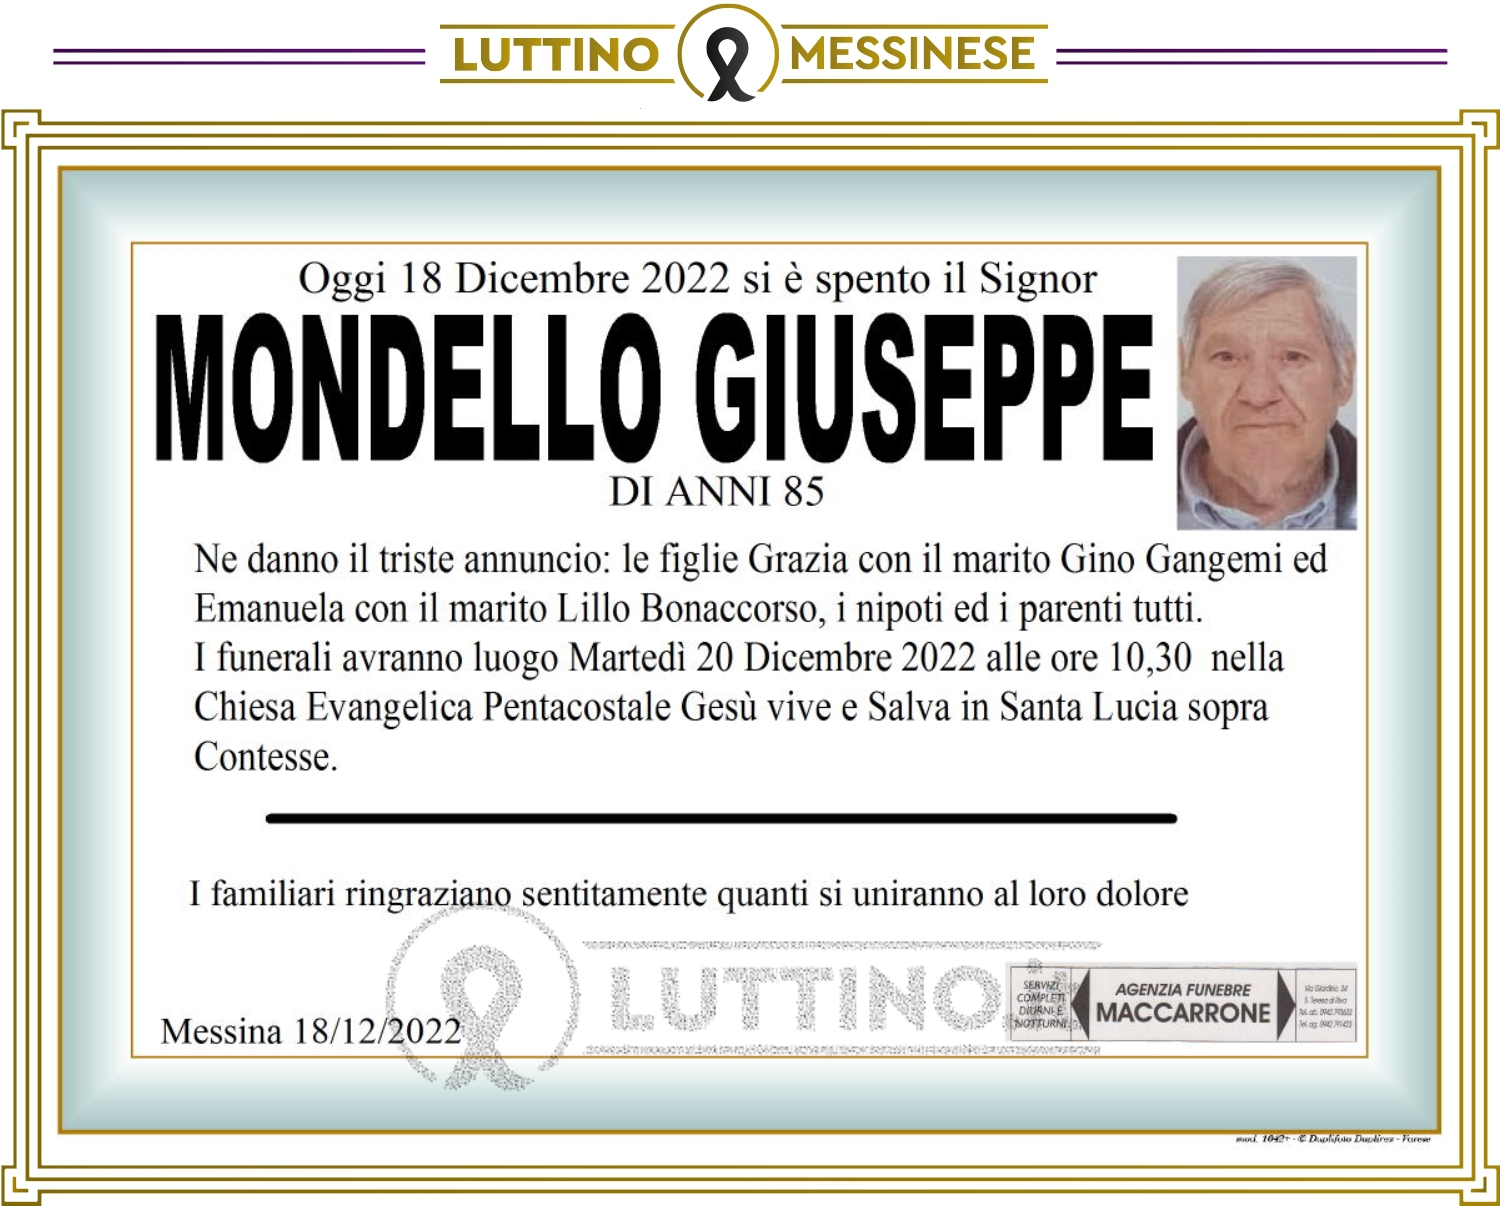 Giuseppe Mondello